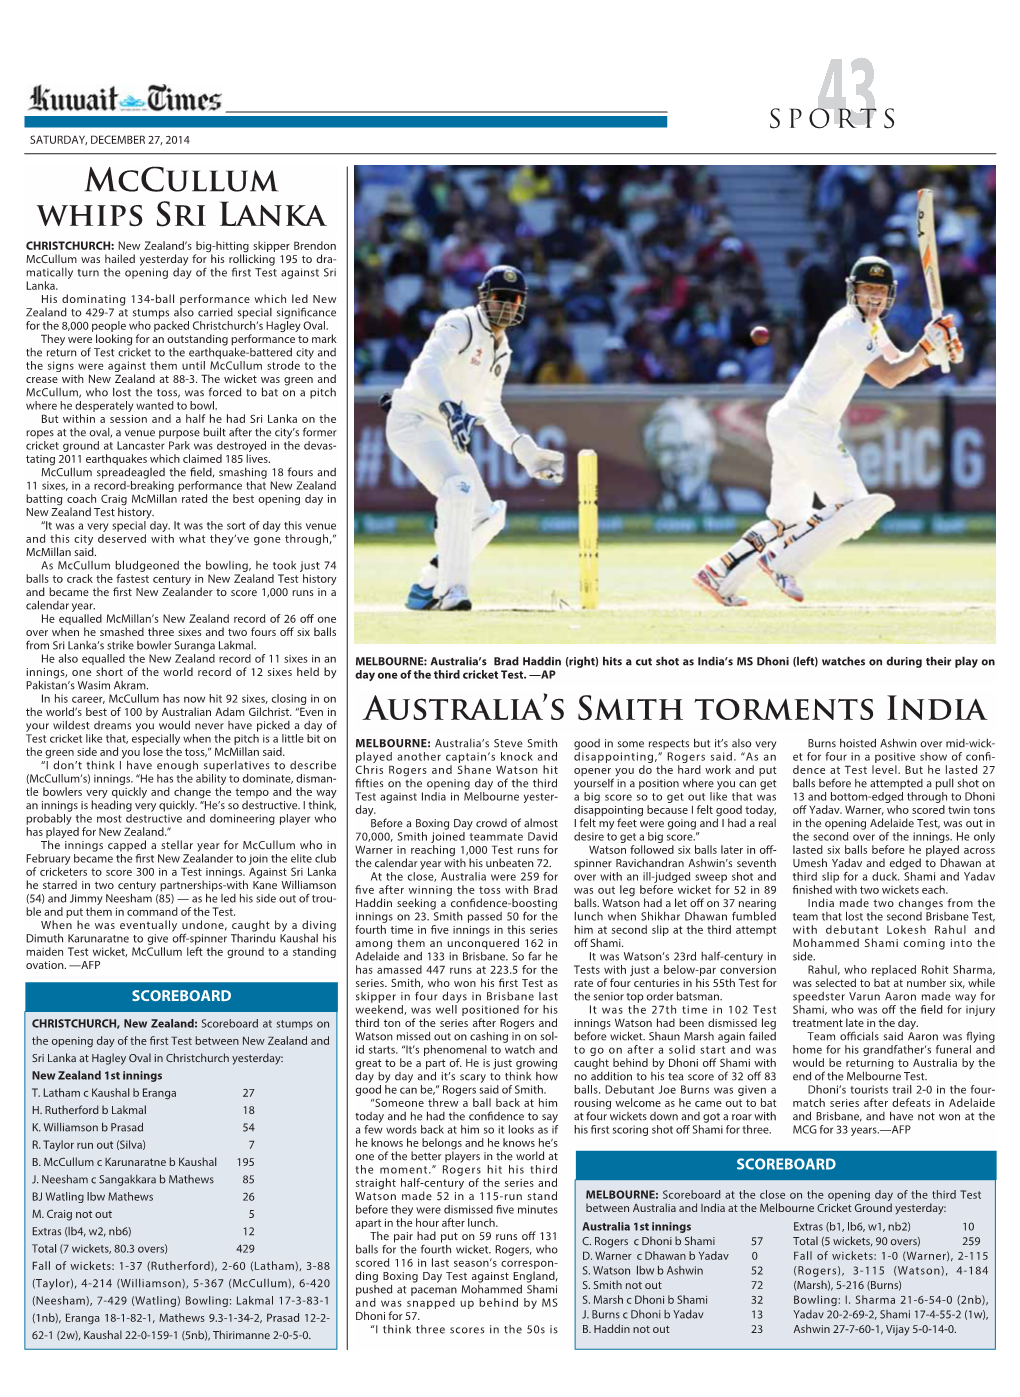 Australia's Smith Torments India Mccullum Whips Sri Lanka